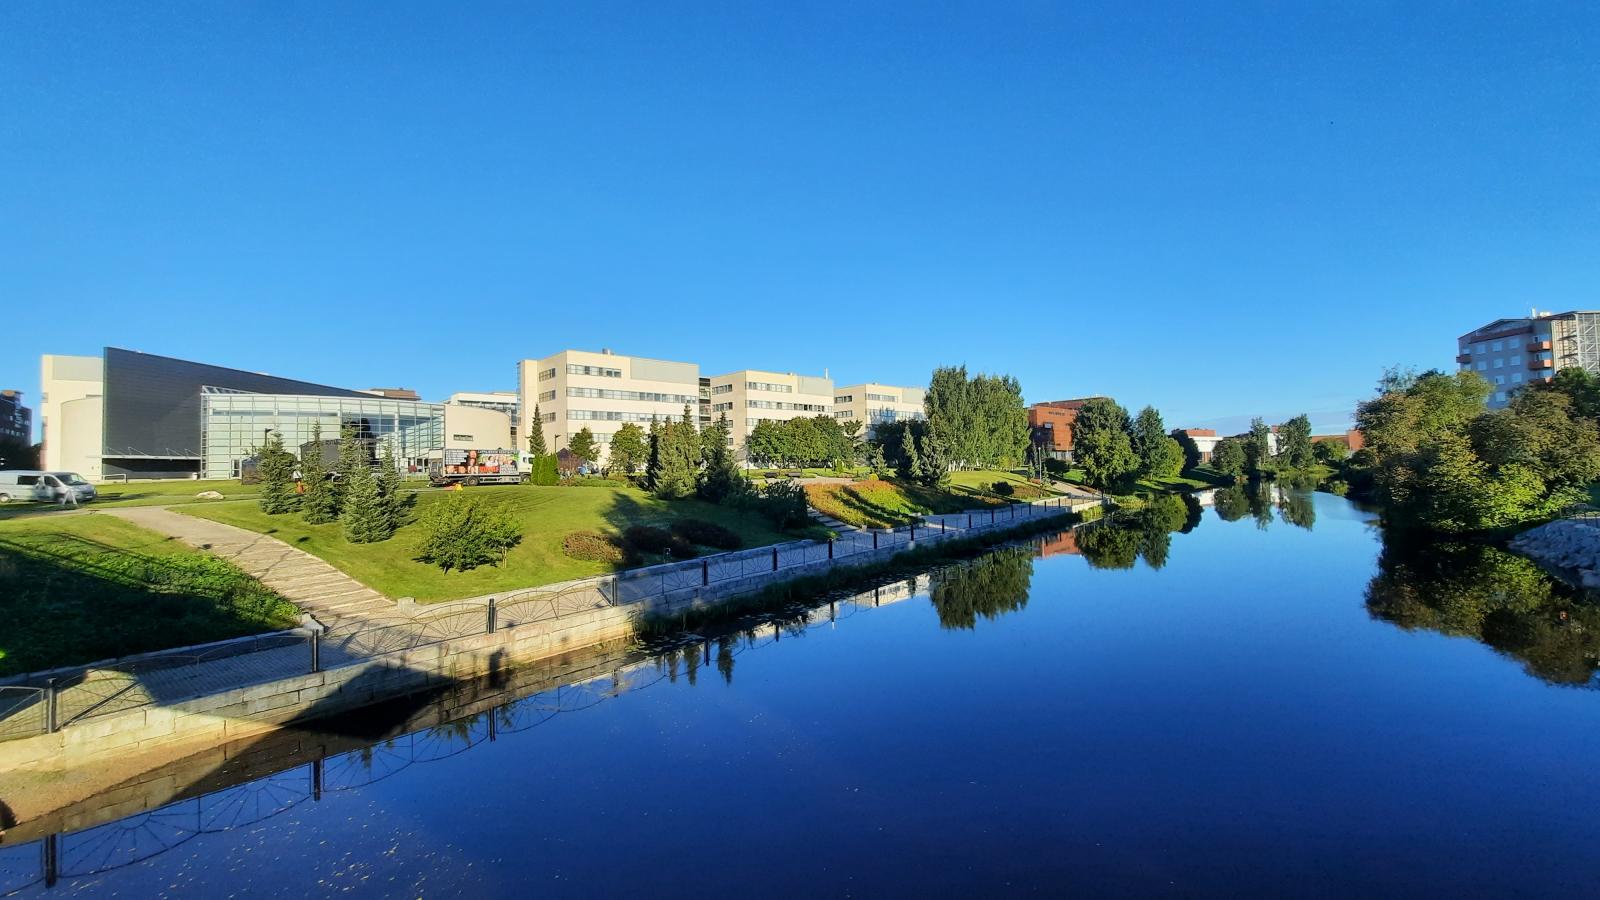 Die modernen, eckigen Geb?ude der Sein?joki University of Applied Sciences sind unter einem wolkenlosen blauen Himmel an einem Flussufer zu sehen.